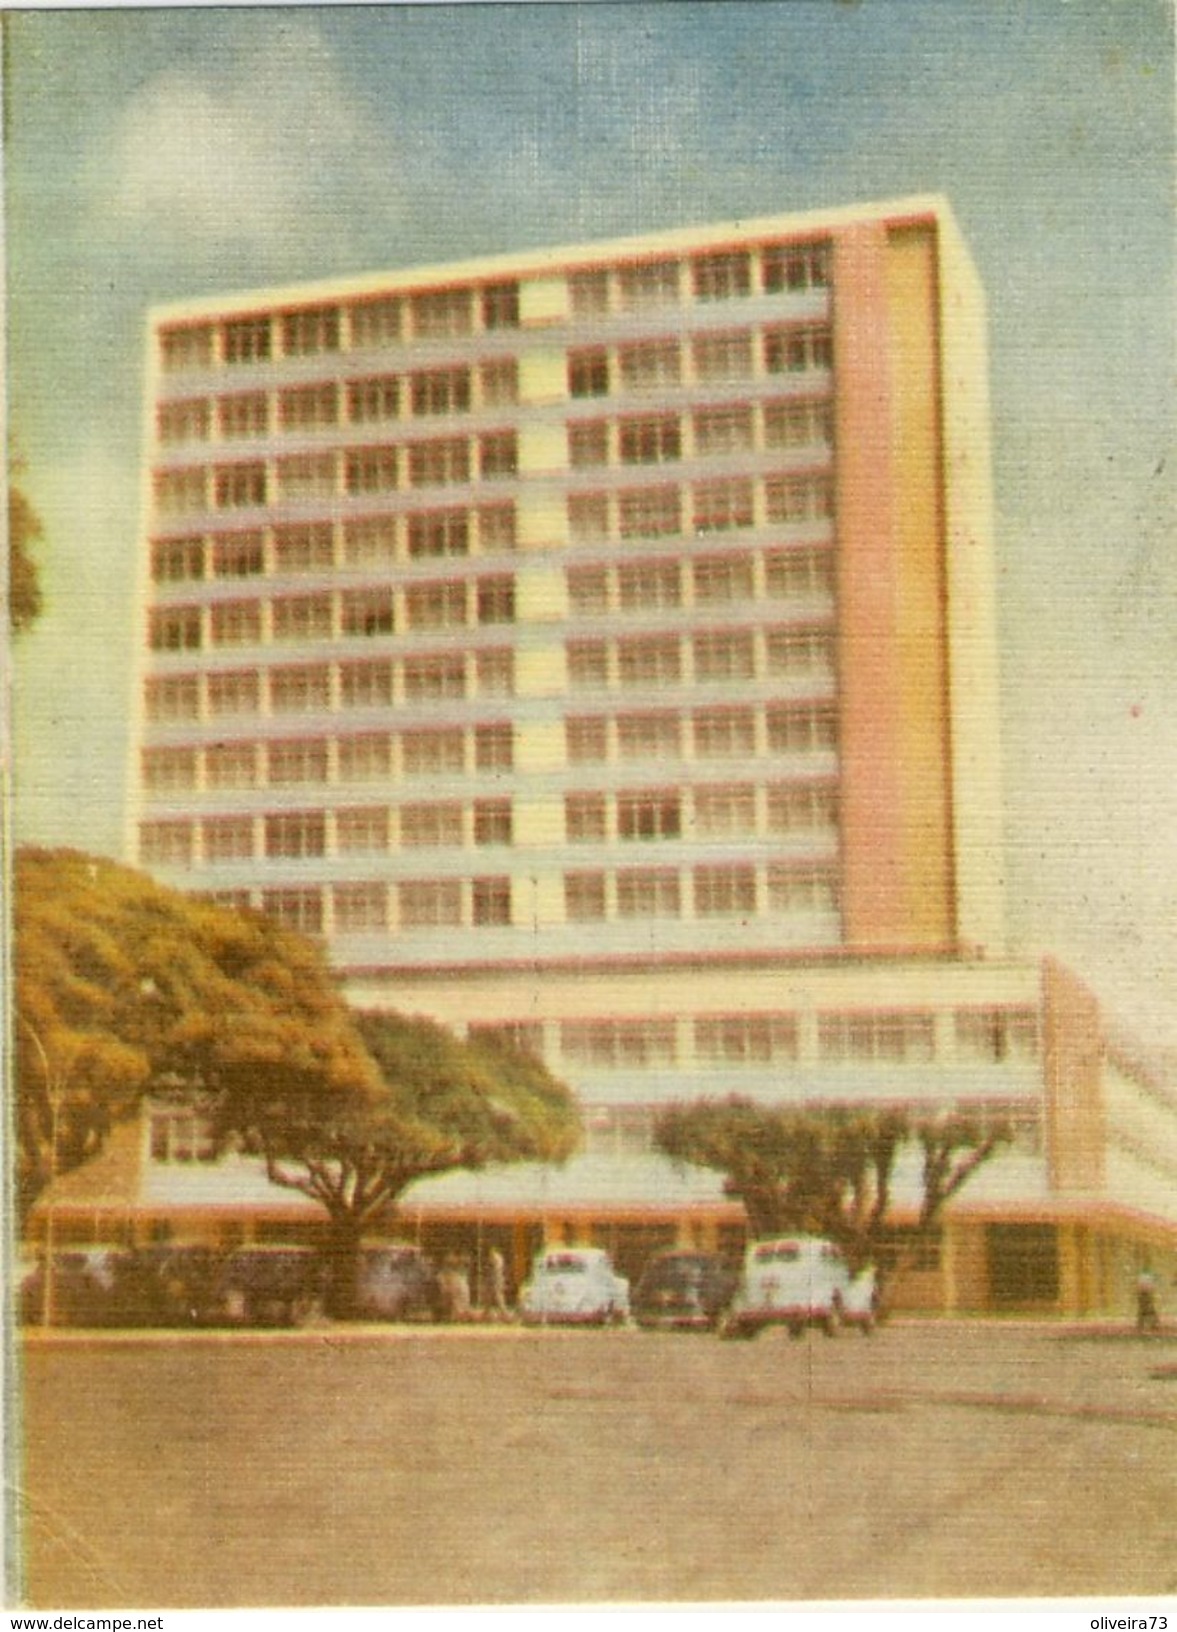 BRASIL - ARACAJU - Hotel Palace De ARACAJU - Aracaju